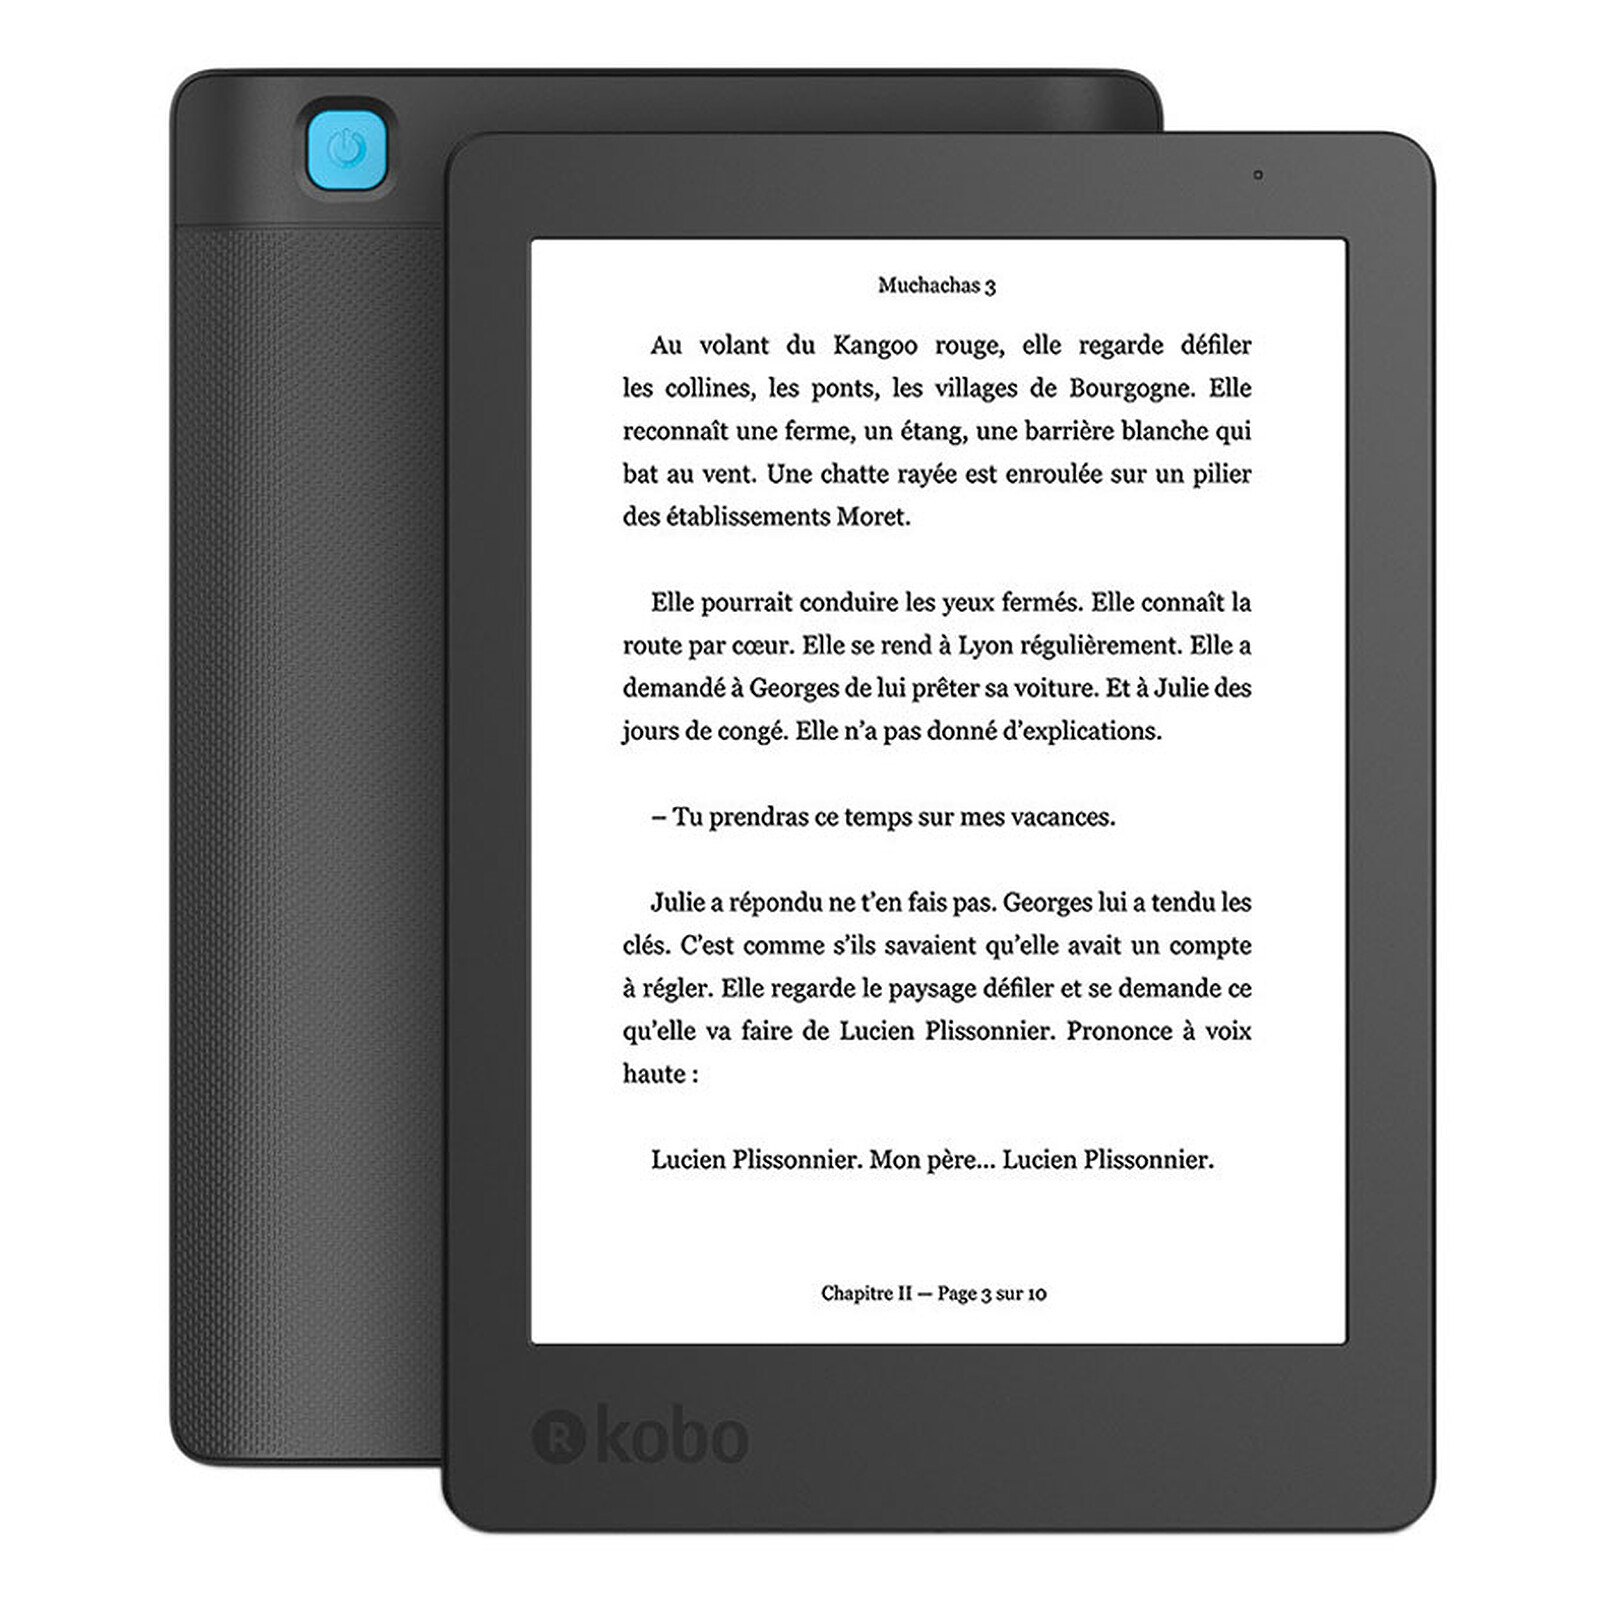 Libro electrónico E-Reader Kobo Clara 2E Azul océano - eBook